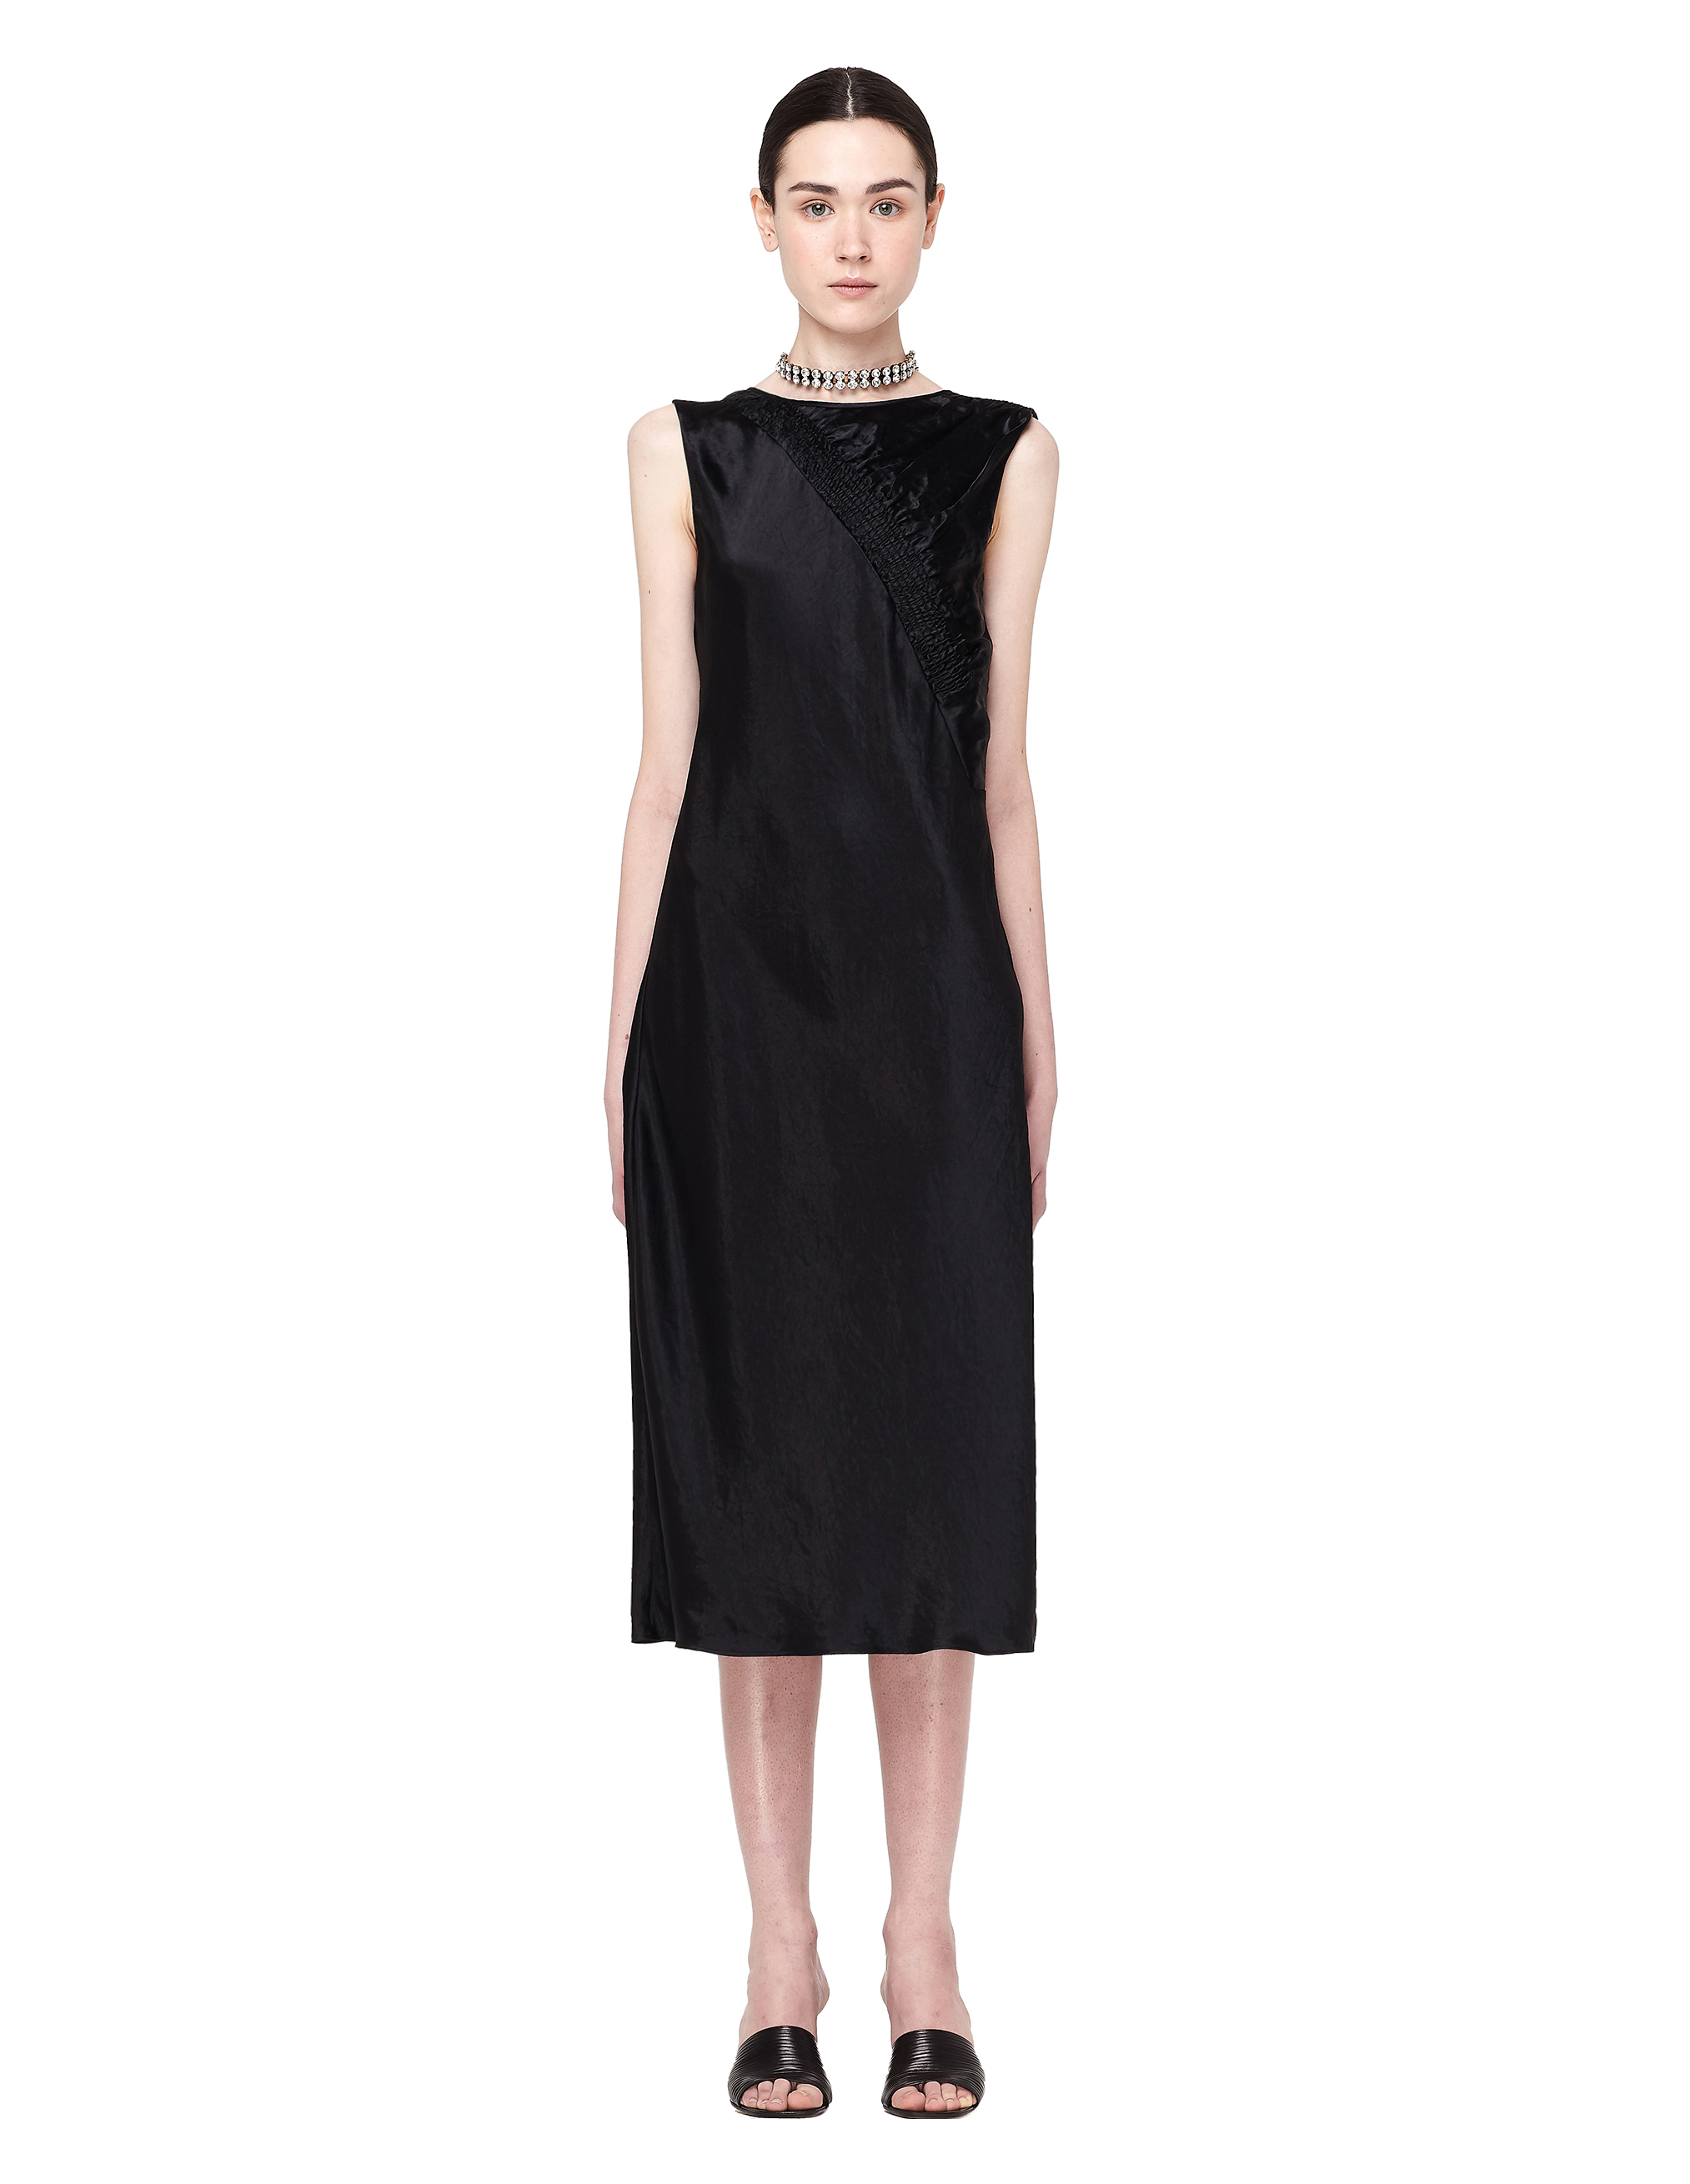 MAISON MARGIELA BLACK SLEEVELESS DRESS,S29CT0734/900